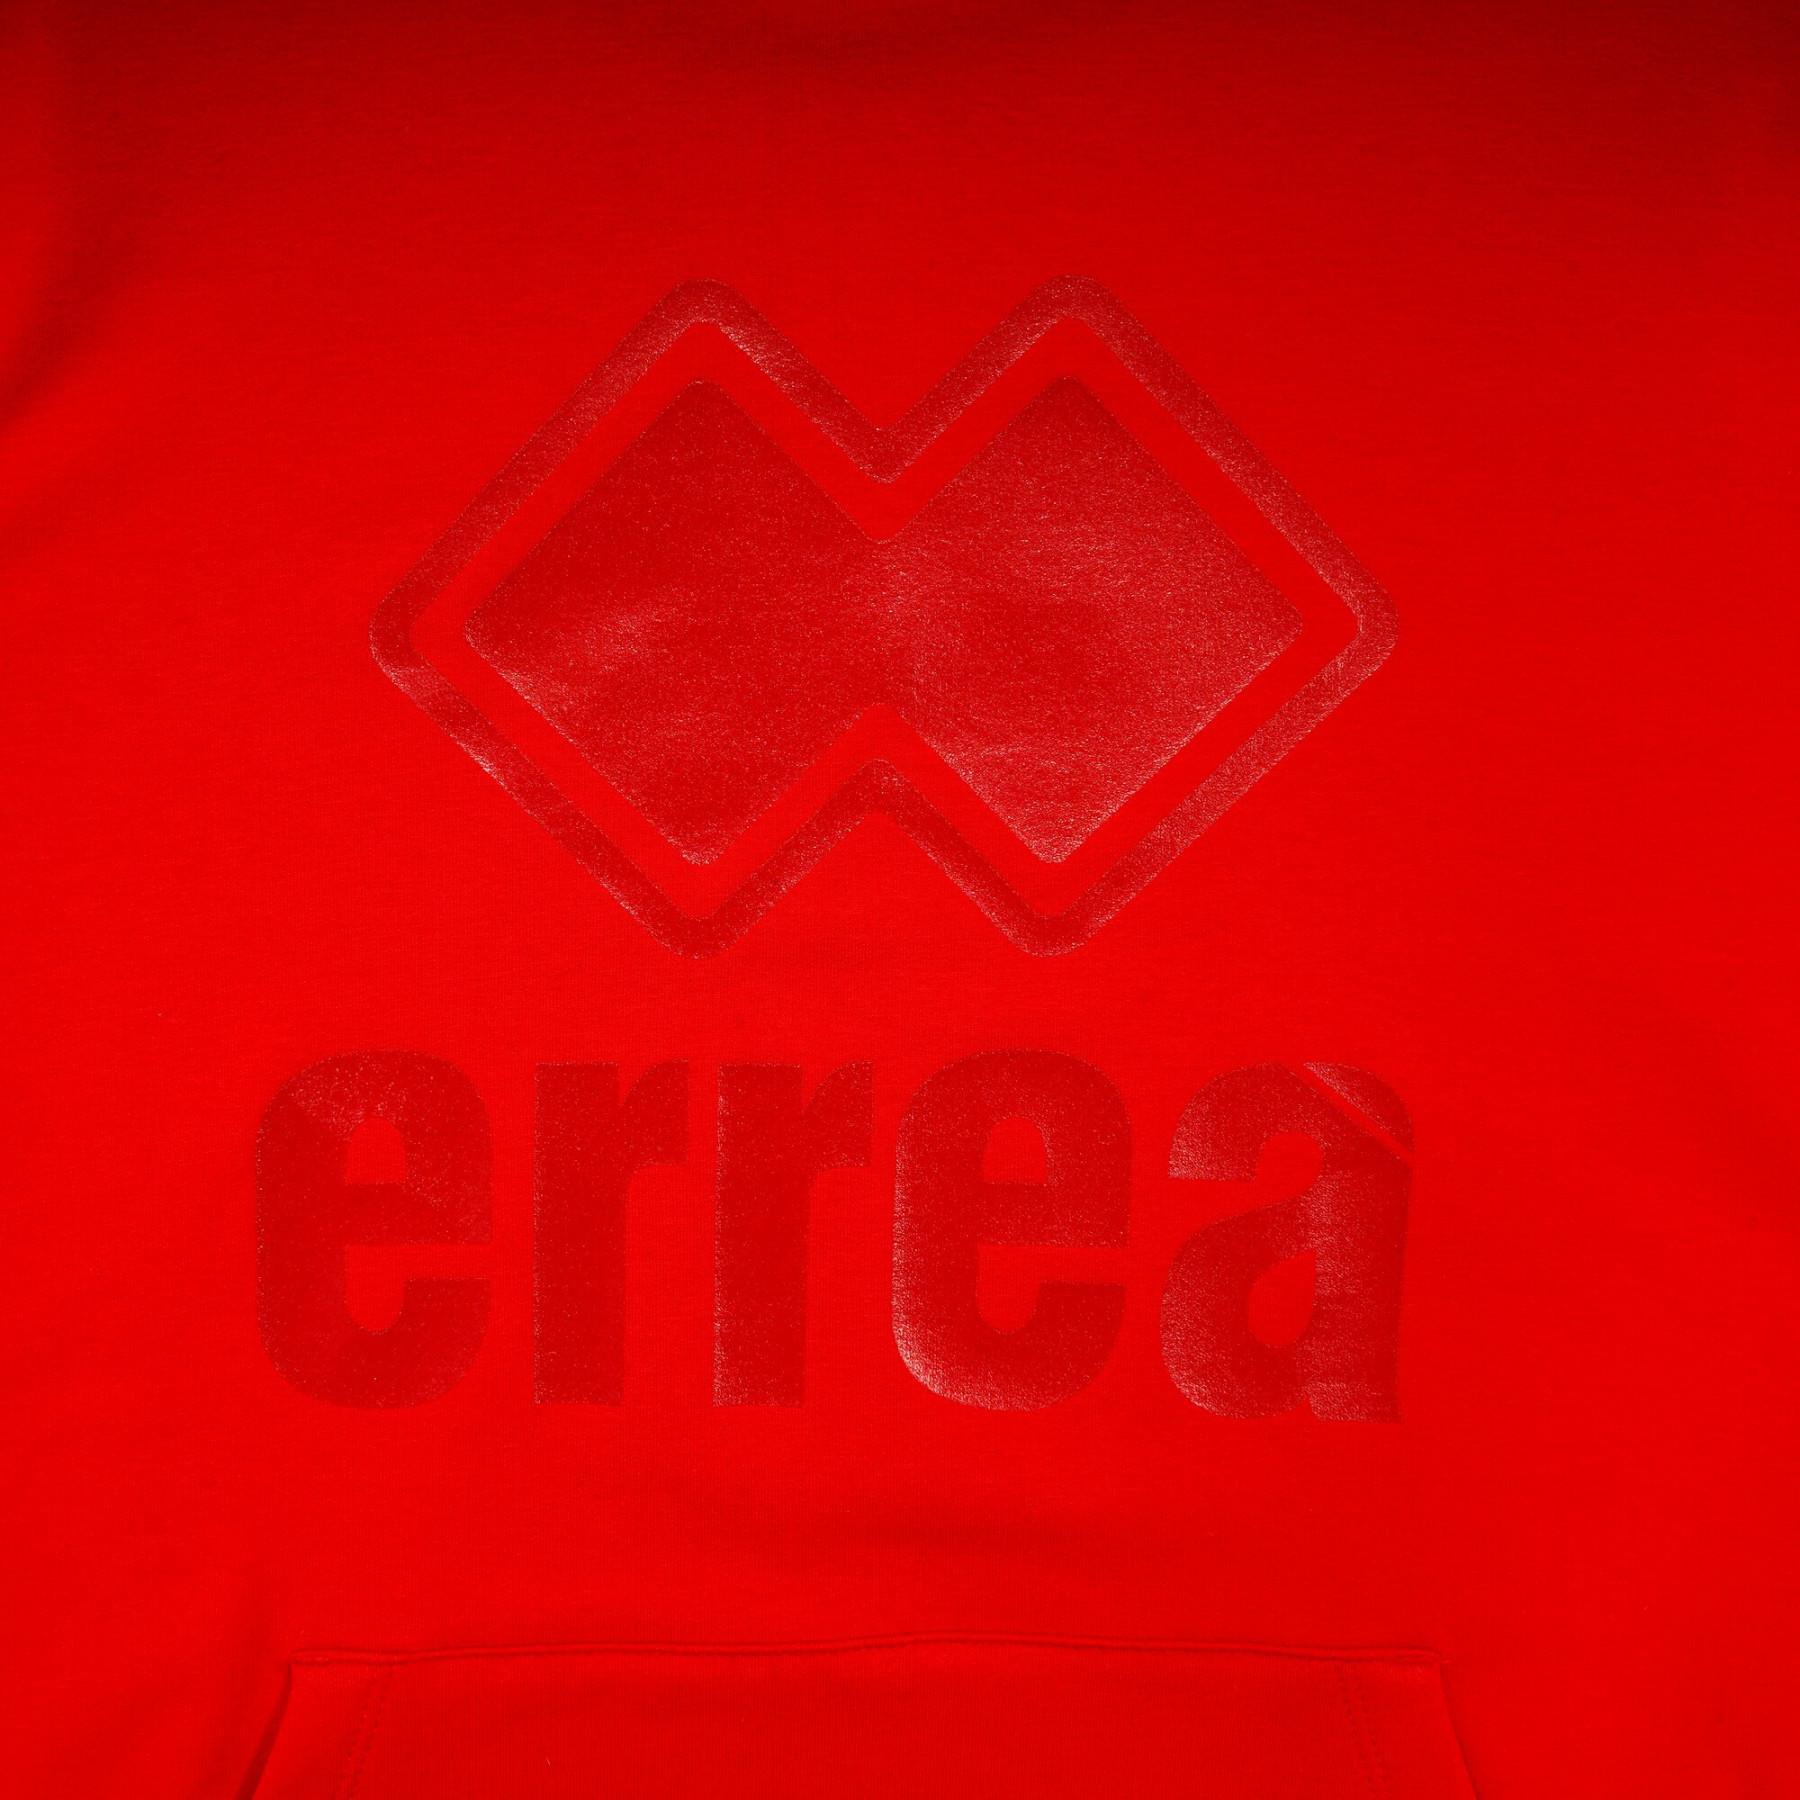 Bluza z kapturem Errea essential big logo tonal fleece